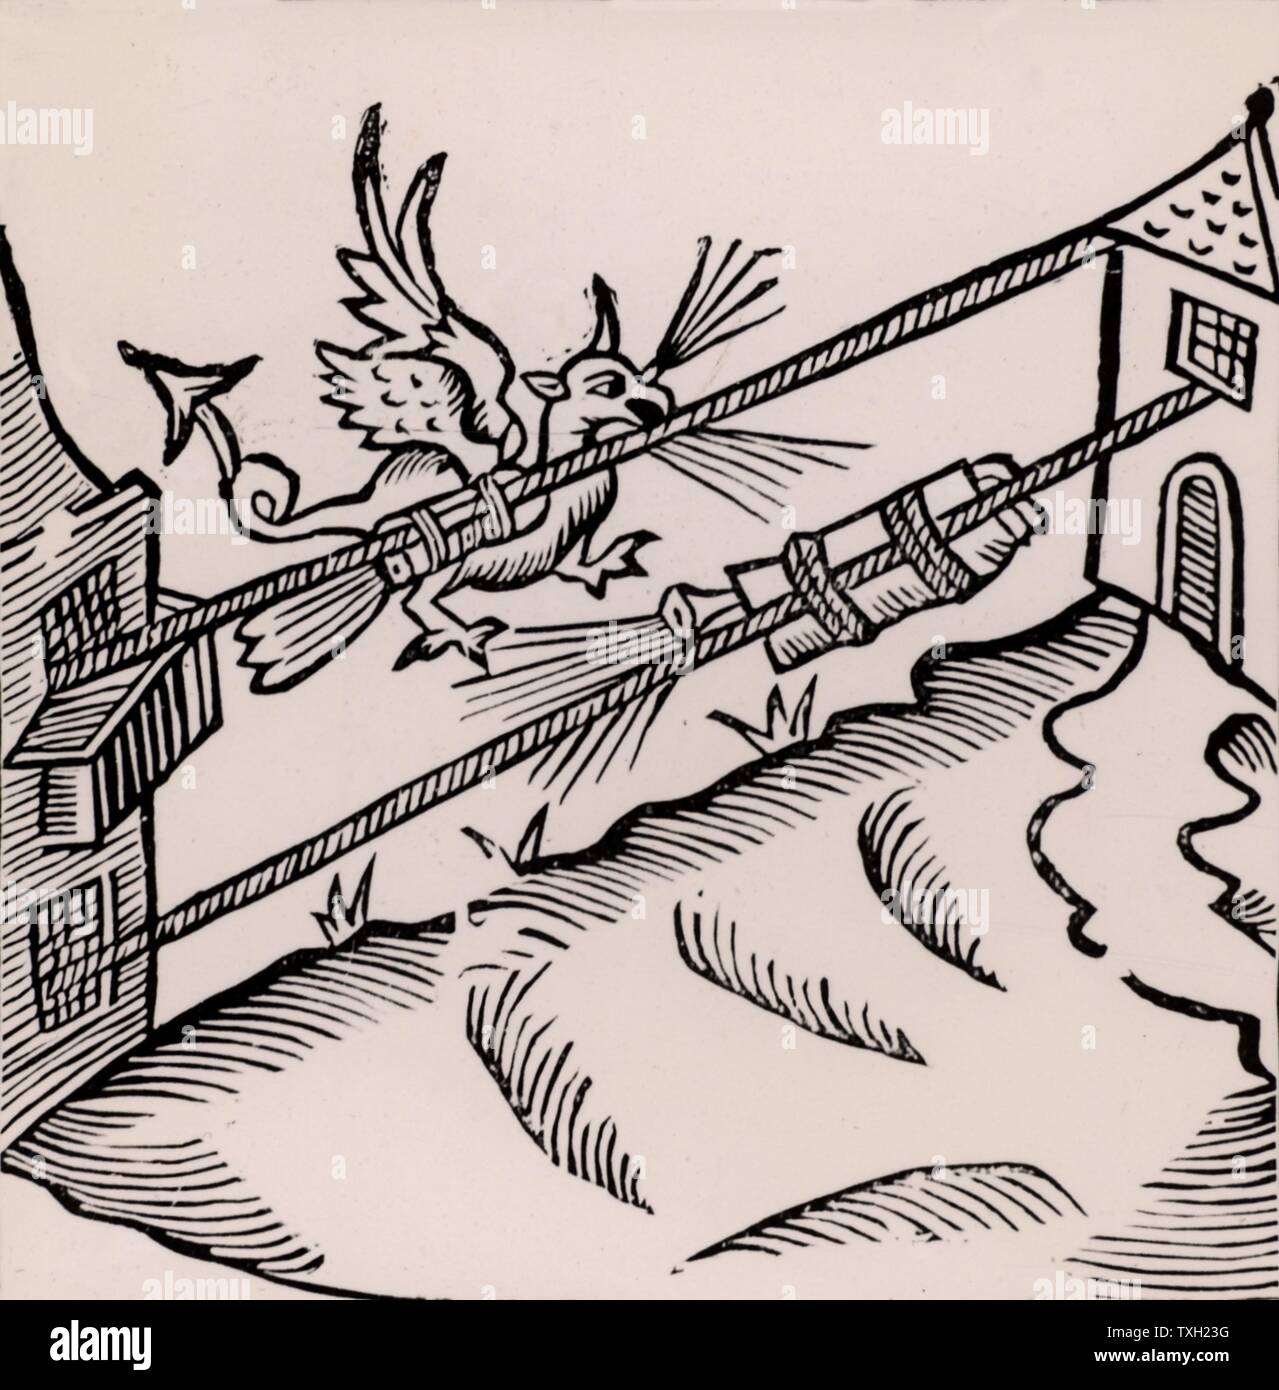 Un feu d'artifice : La figure d'un dragon de feu de respiration est fixé à une fusée à une corde tendue entre deux bâtiments. Gravure sur bois de 'récréations mathematiques' par Jean Leurechon (Rouen, 1628). Banque D'Images